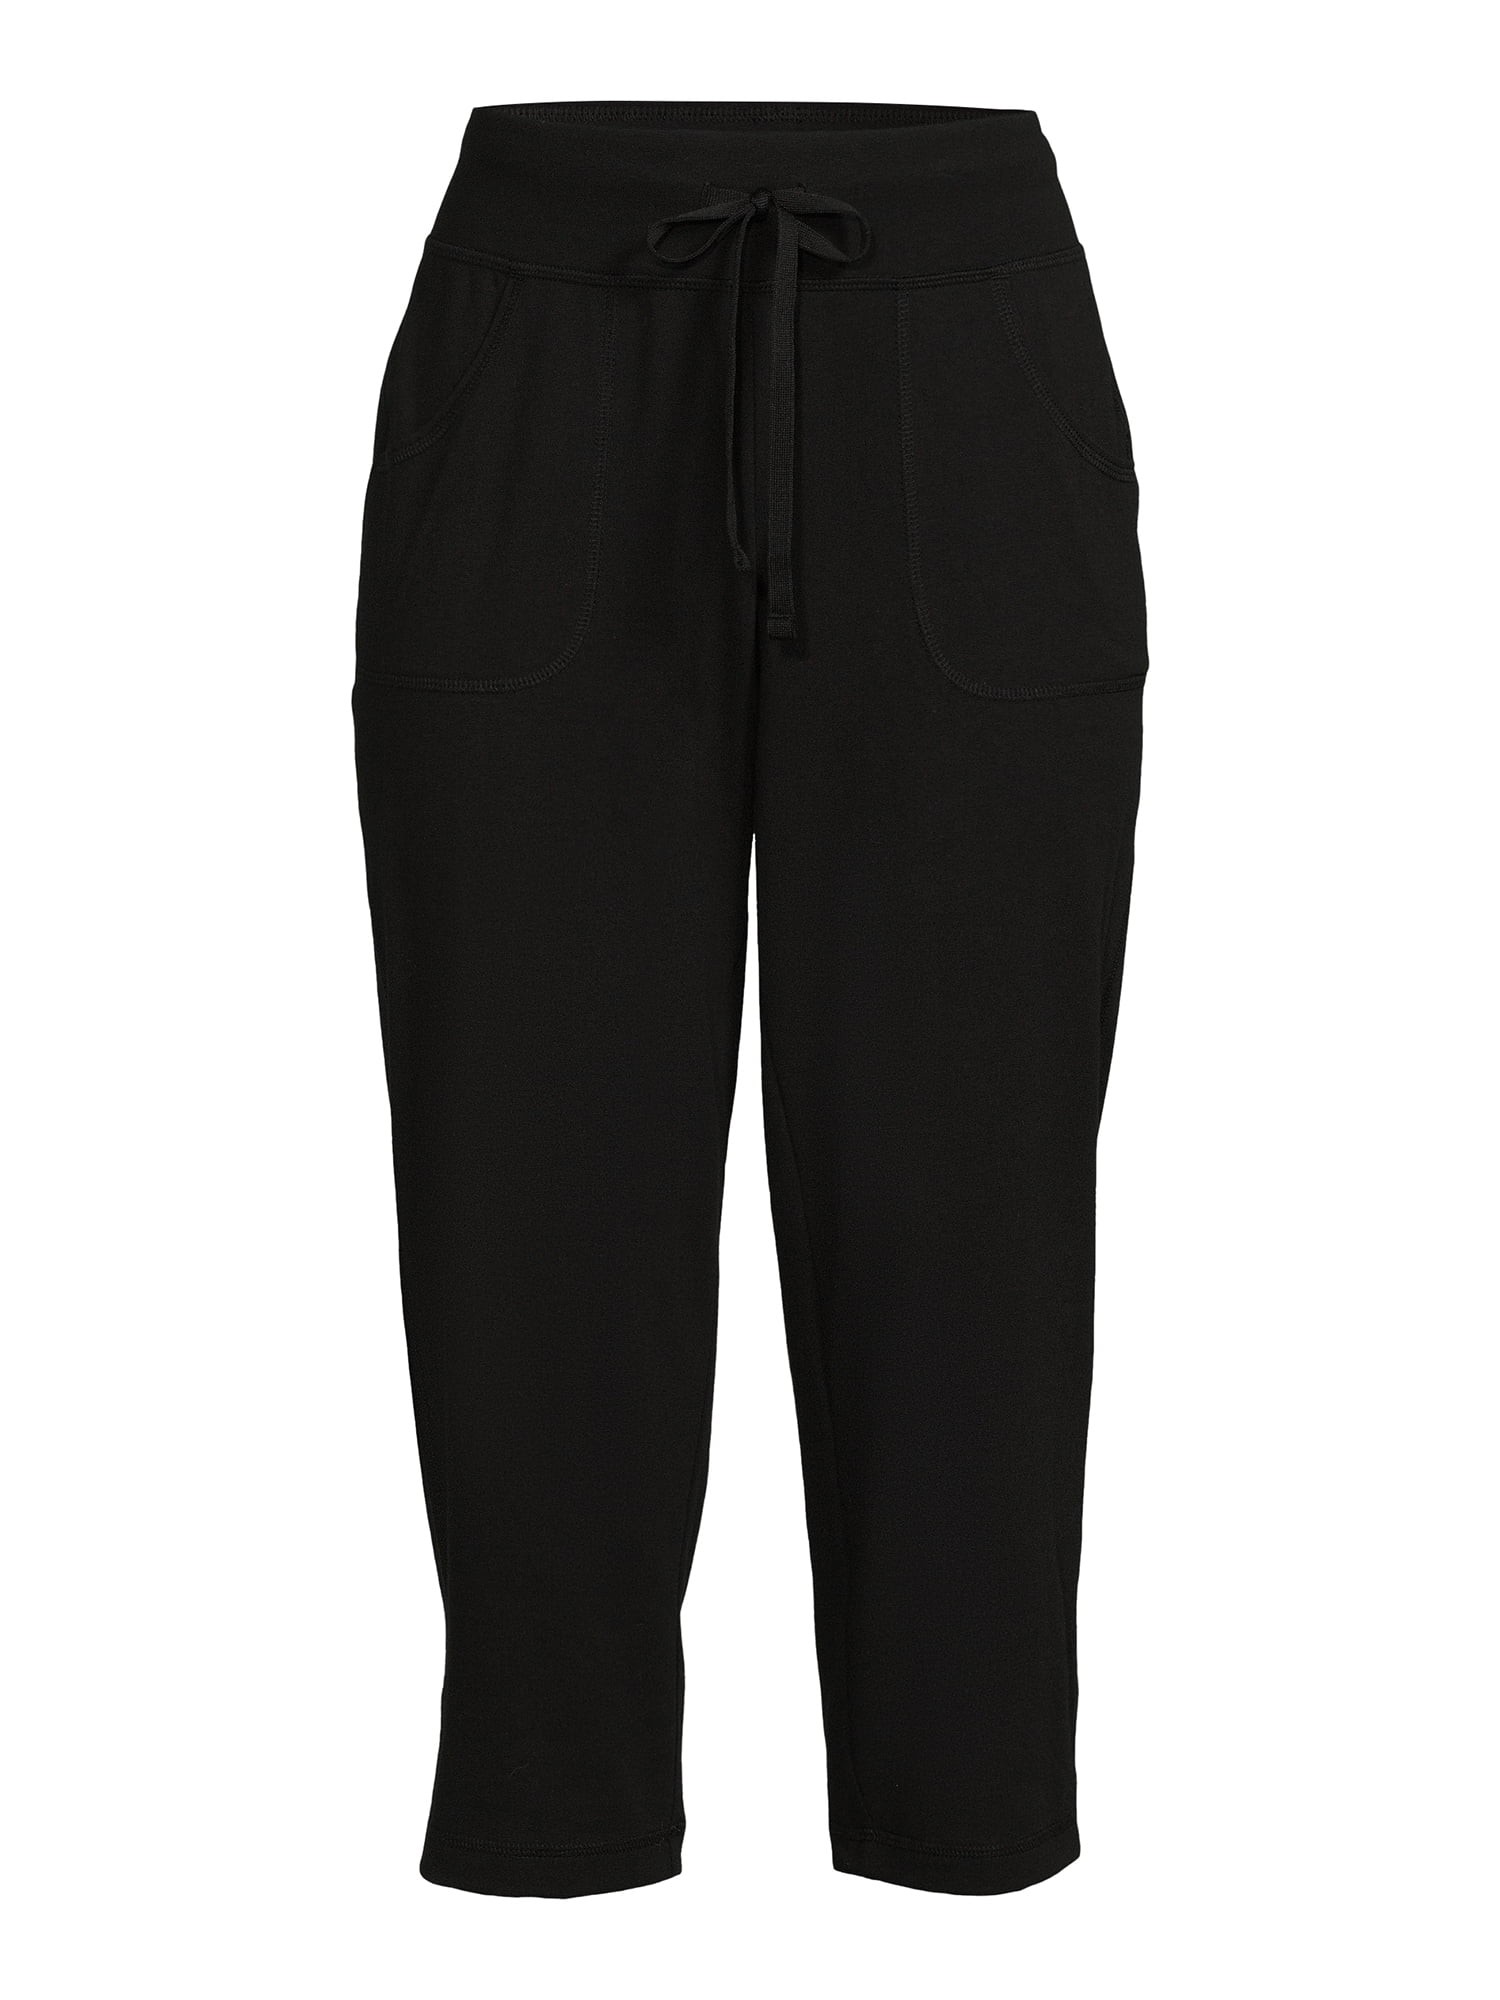 Mejores ofertas e historial de precios de Athletic Works Women's Knit Capri  Pants with Pockets, Sizes XS-XXXL en